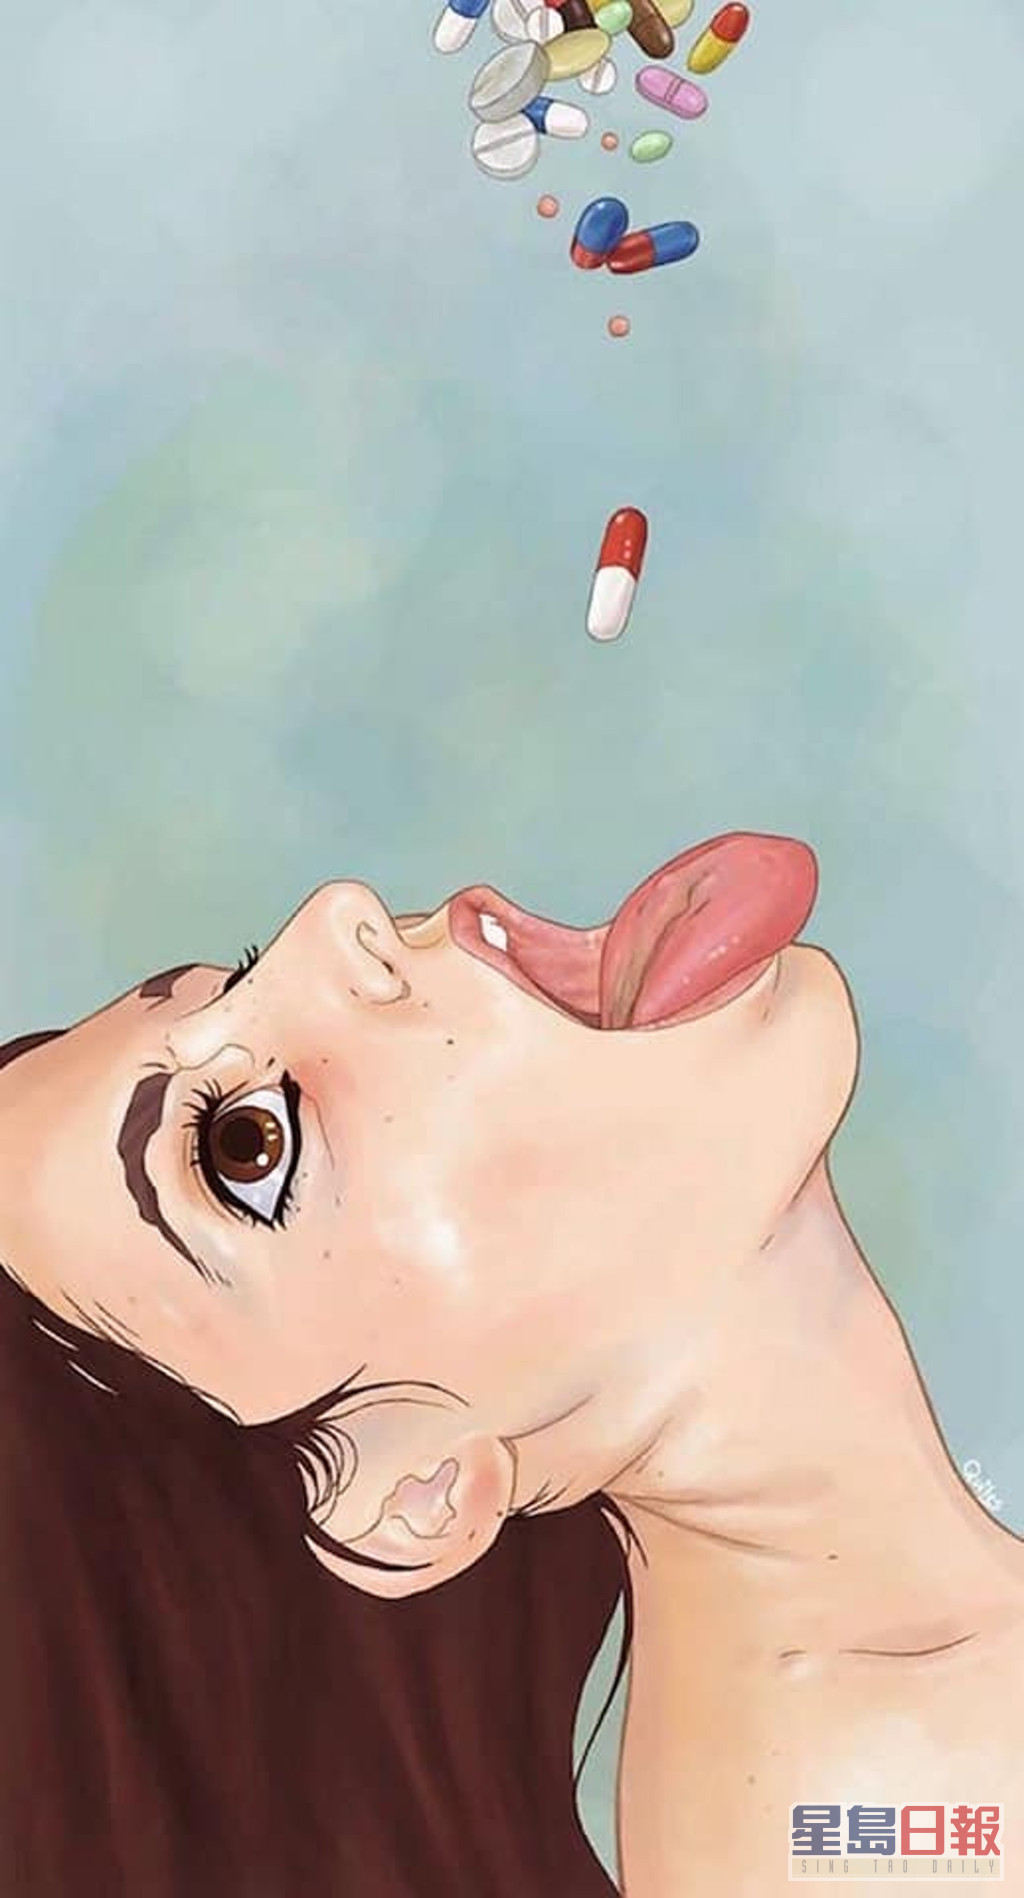 有女子吞下大量的药丸的画作，疑暗示Tangmo遭落药或与毒品有关。